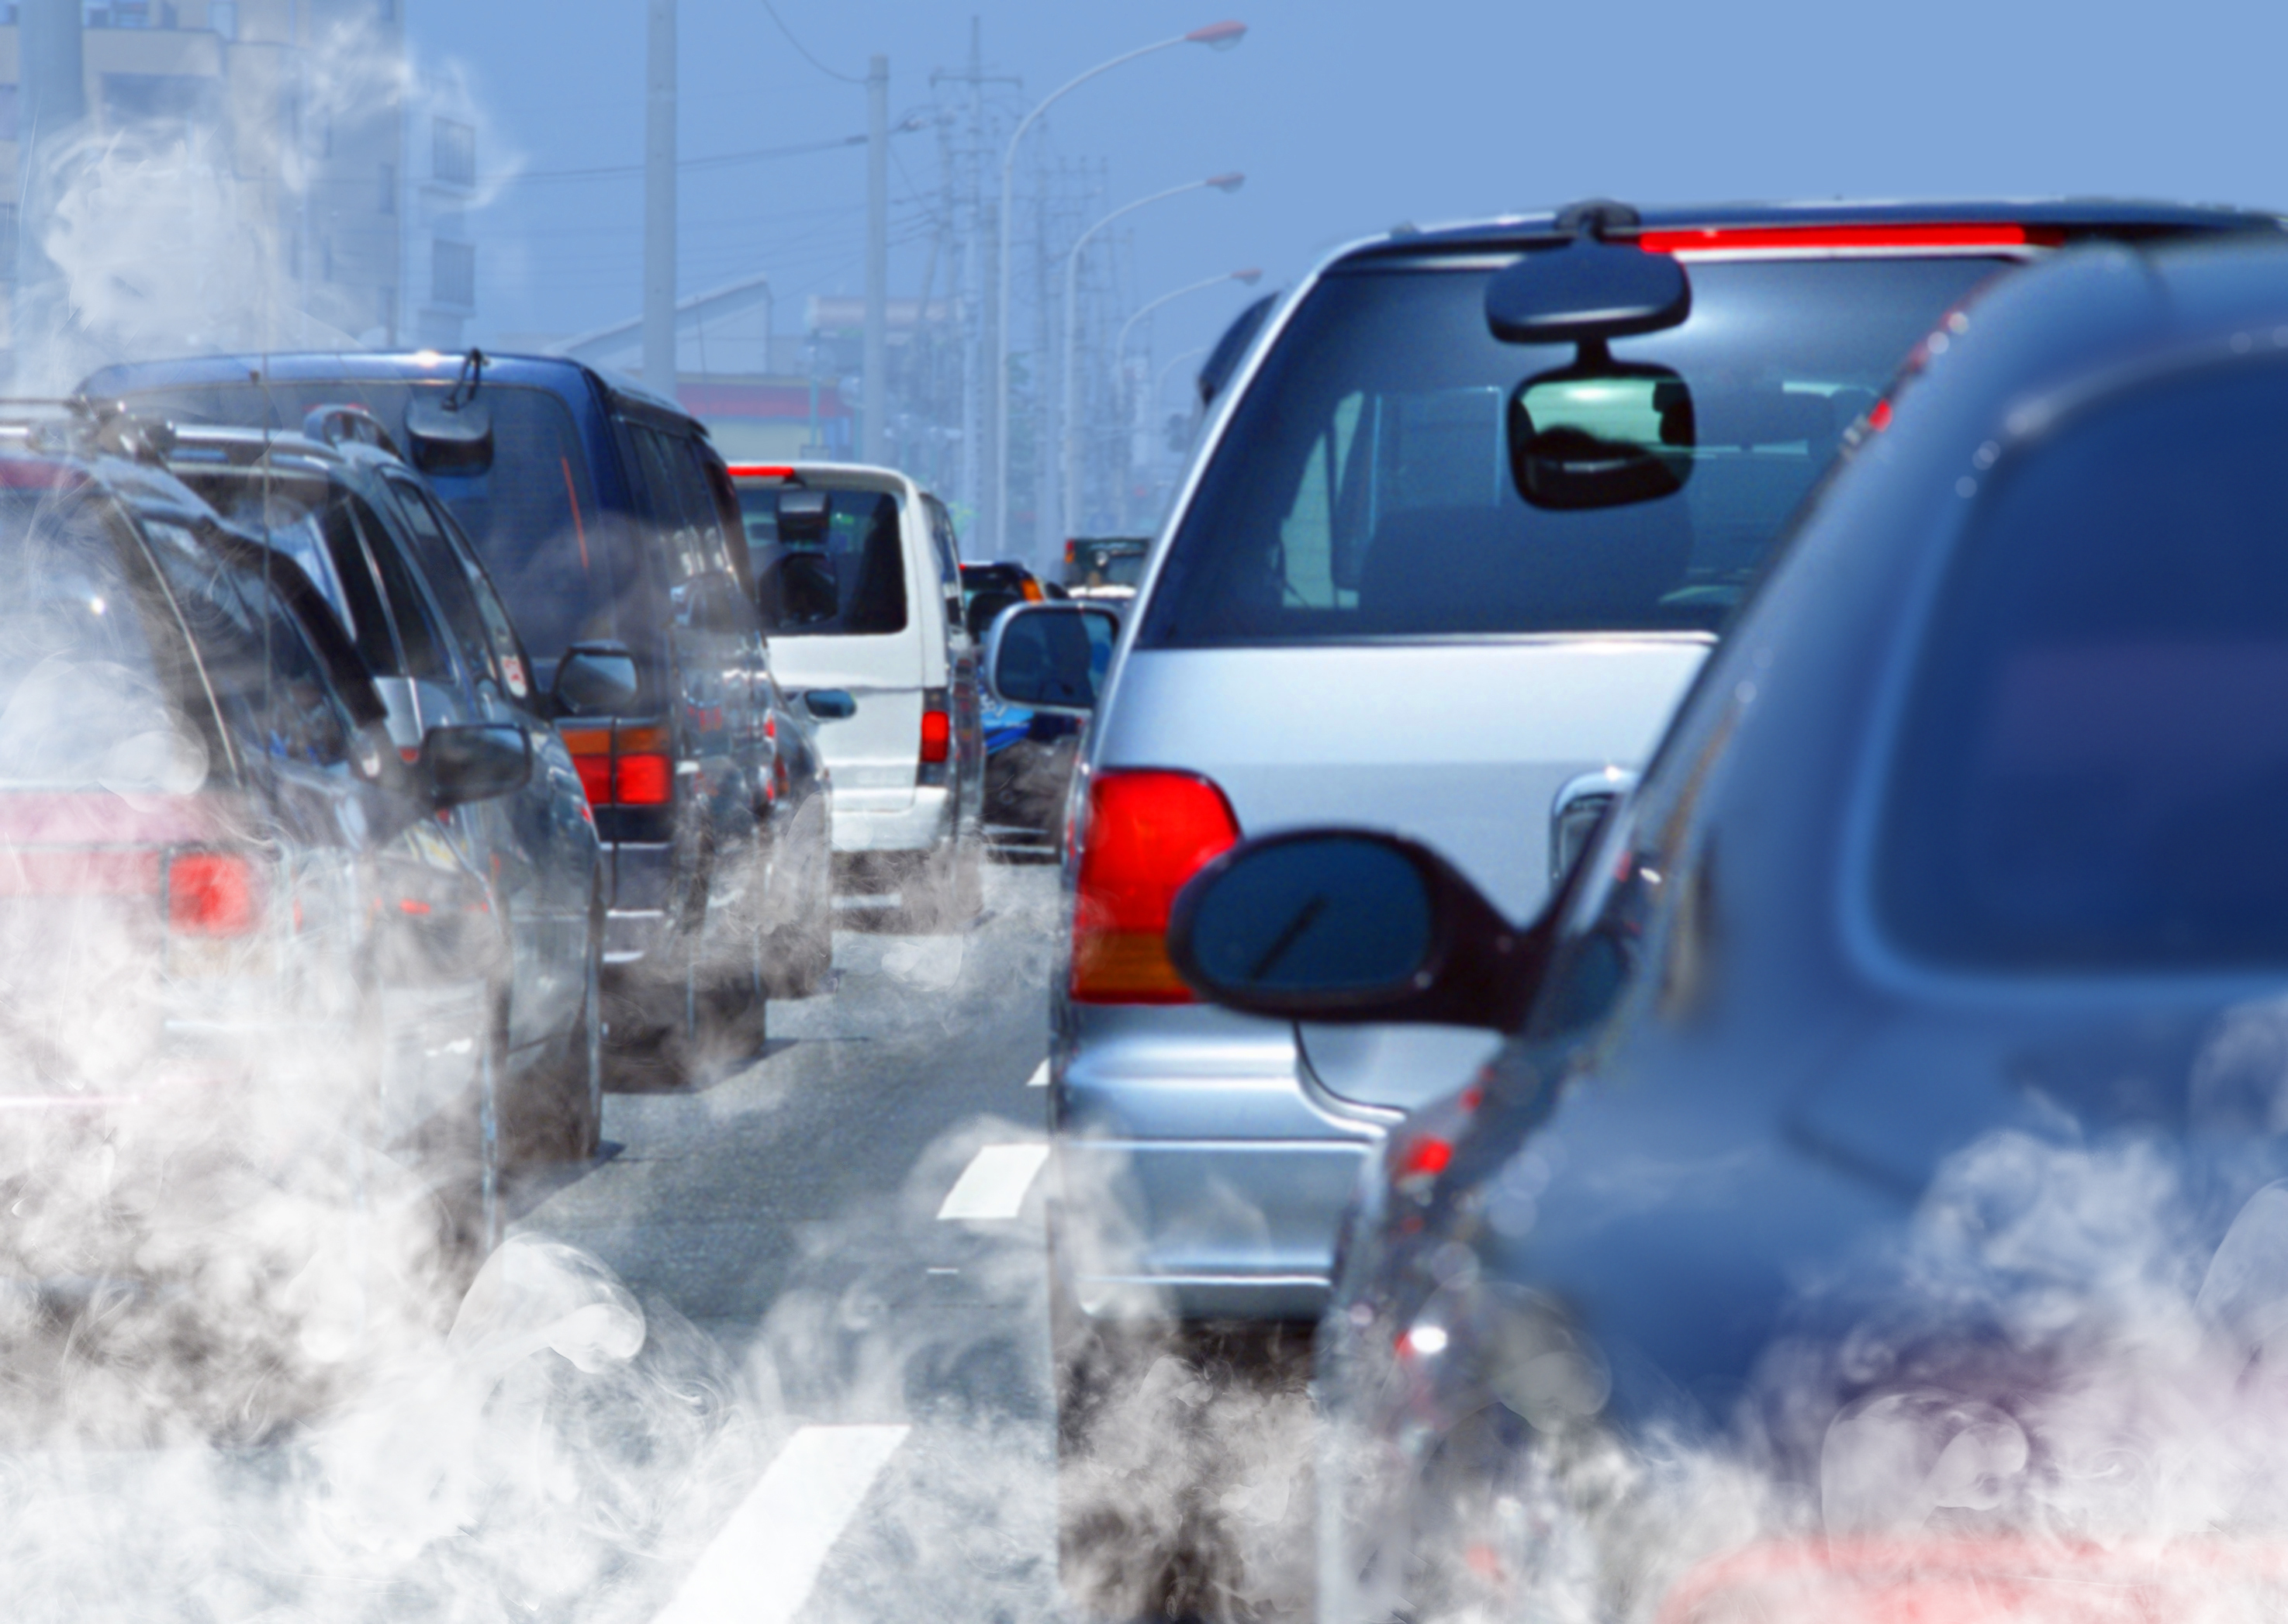 자동차 배기가스같이 교통 관련 대기오염 물질이 알츠하이머 치매를 유발할 수 있다는 연구 결과가 나왔다. 교통 관련 대기오염 물질은 알츠하이머 유발 유전자가 없는 사람에게도 알츠하이머를 유발시키는 것으로 나타났다.  영국 옥스퍼드대 제공